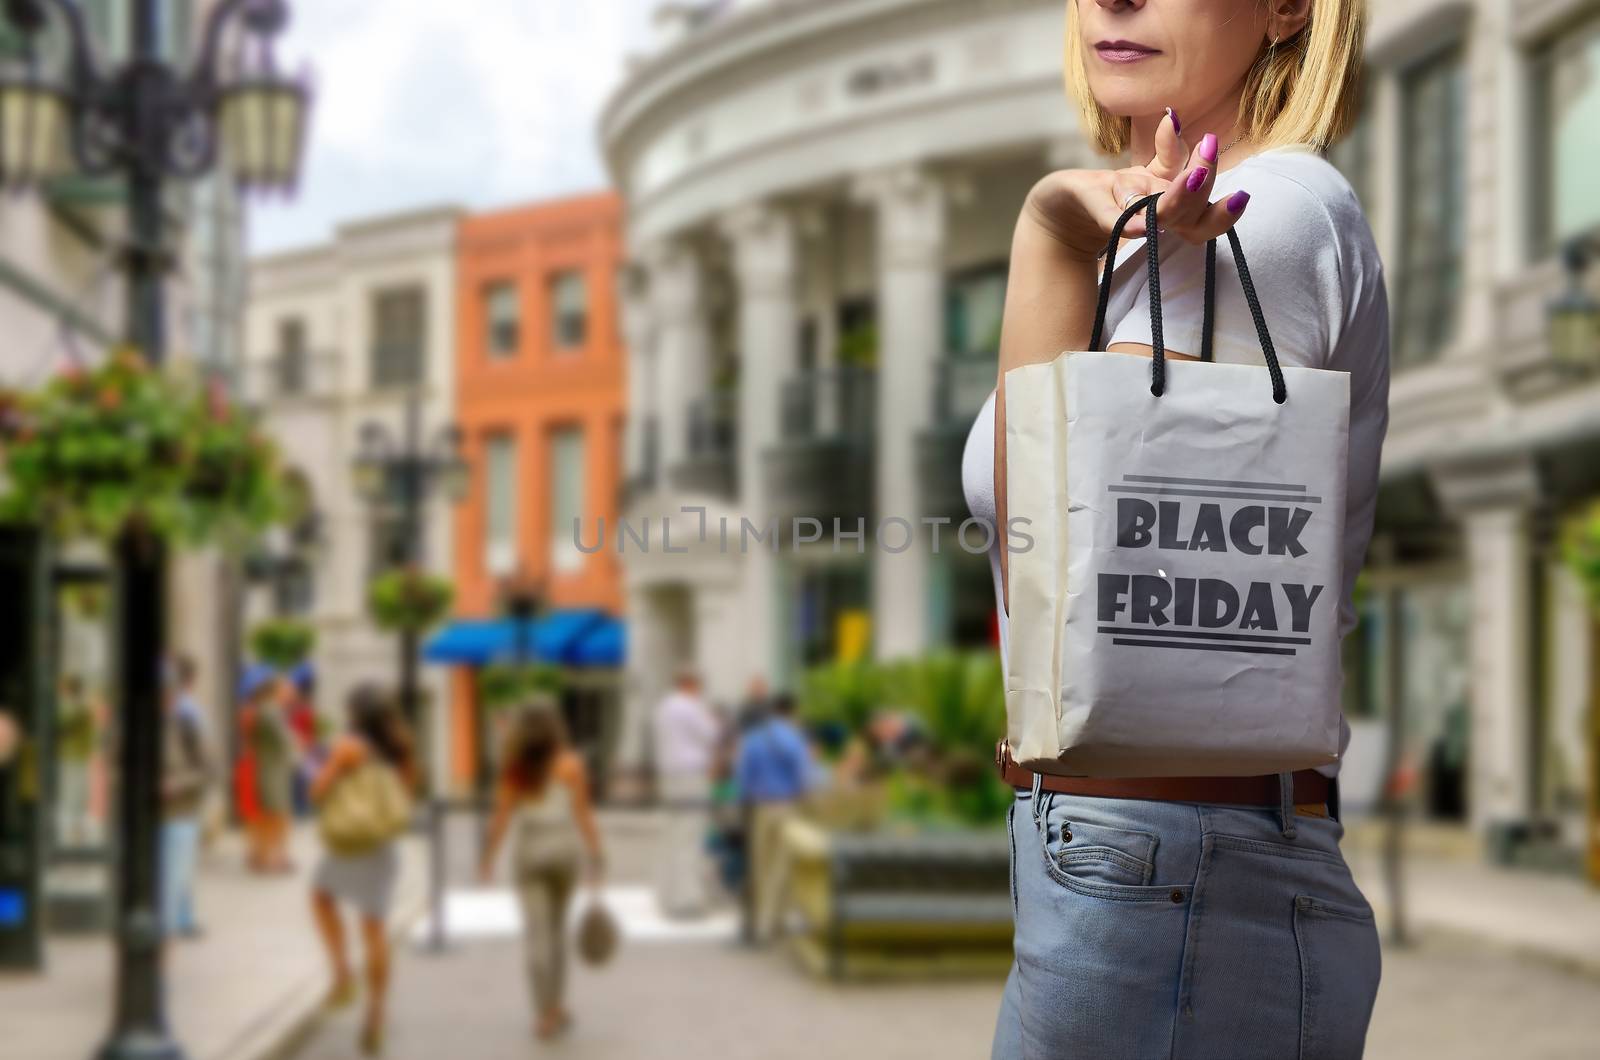 Shopping on Black Friday by bpardofotografia